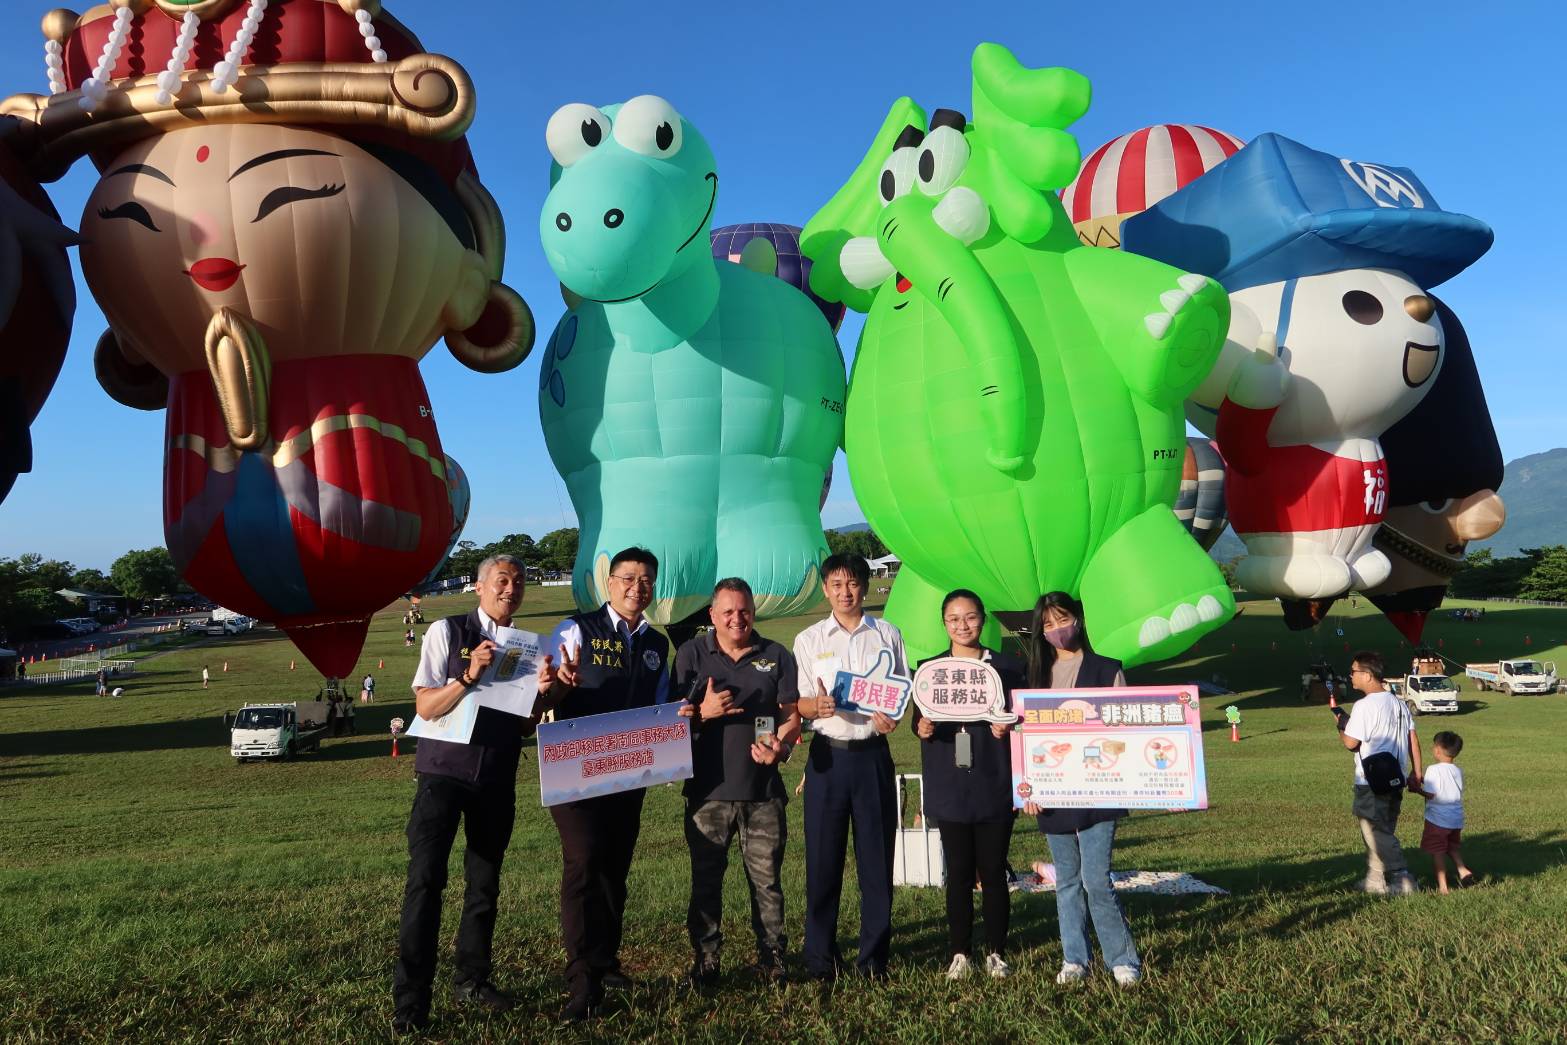 Trạm Phục vụ thuộc Sở Di dân huyện Đài Đông tuyên truyền phòng chống hối lộ cử tri cho người dân và phi công tại Festival khinh khí cầu. (Ảnh: Sở Di dân)